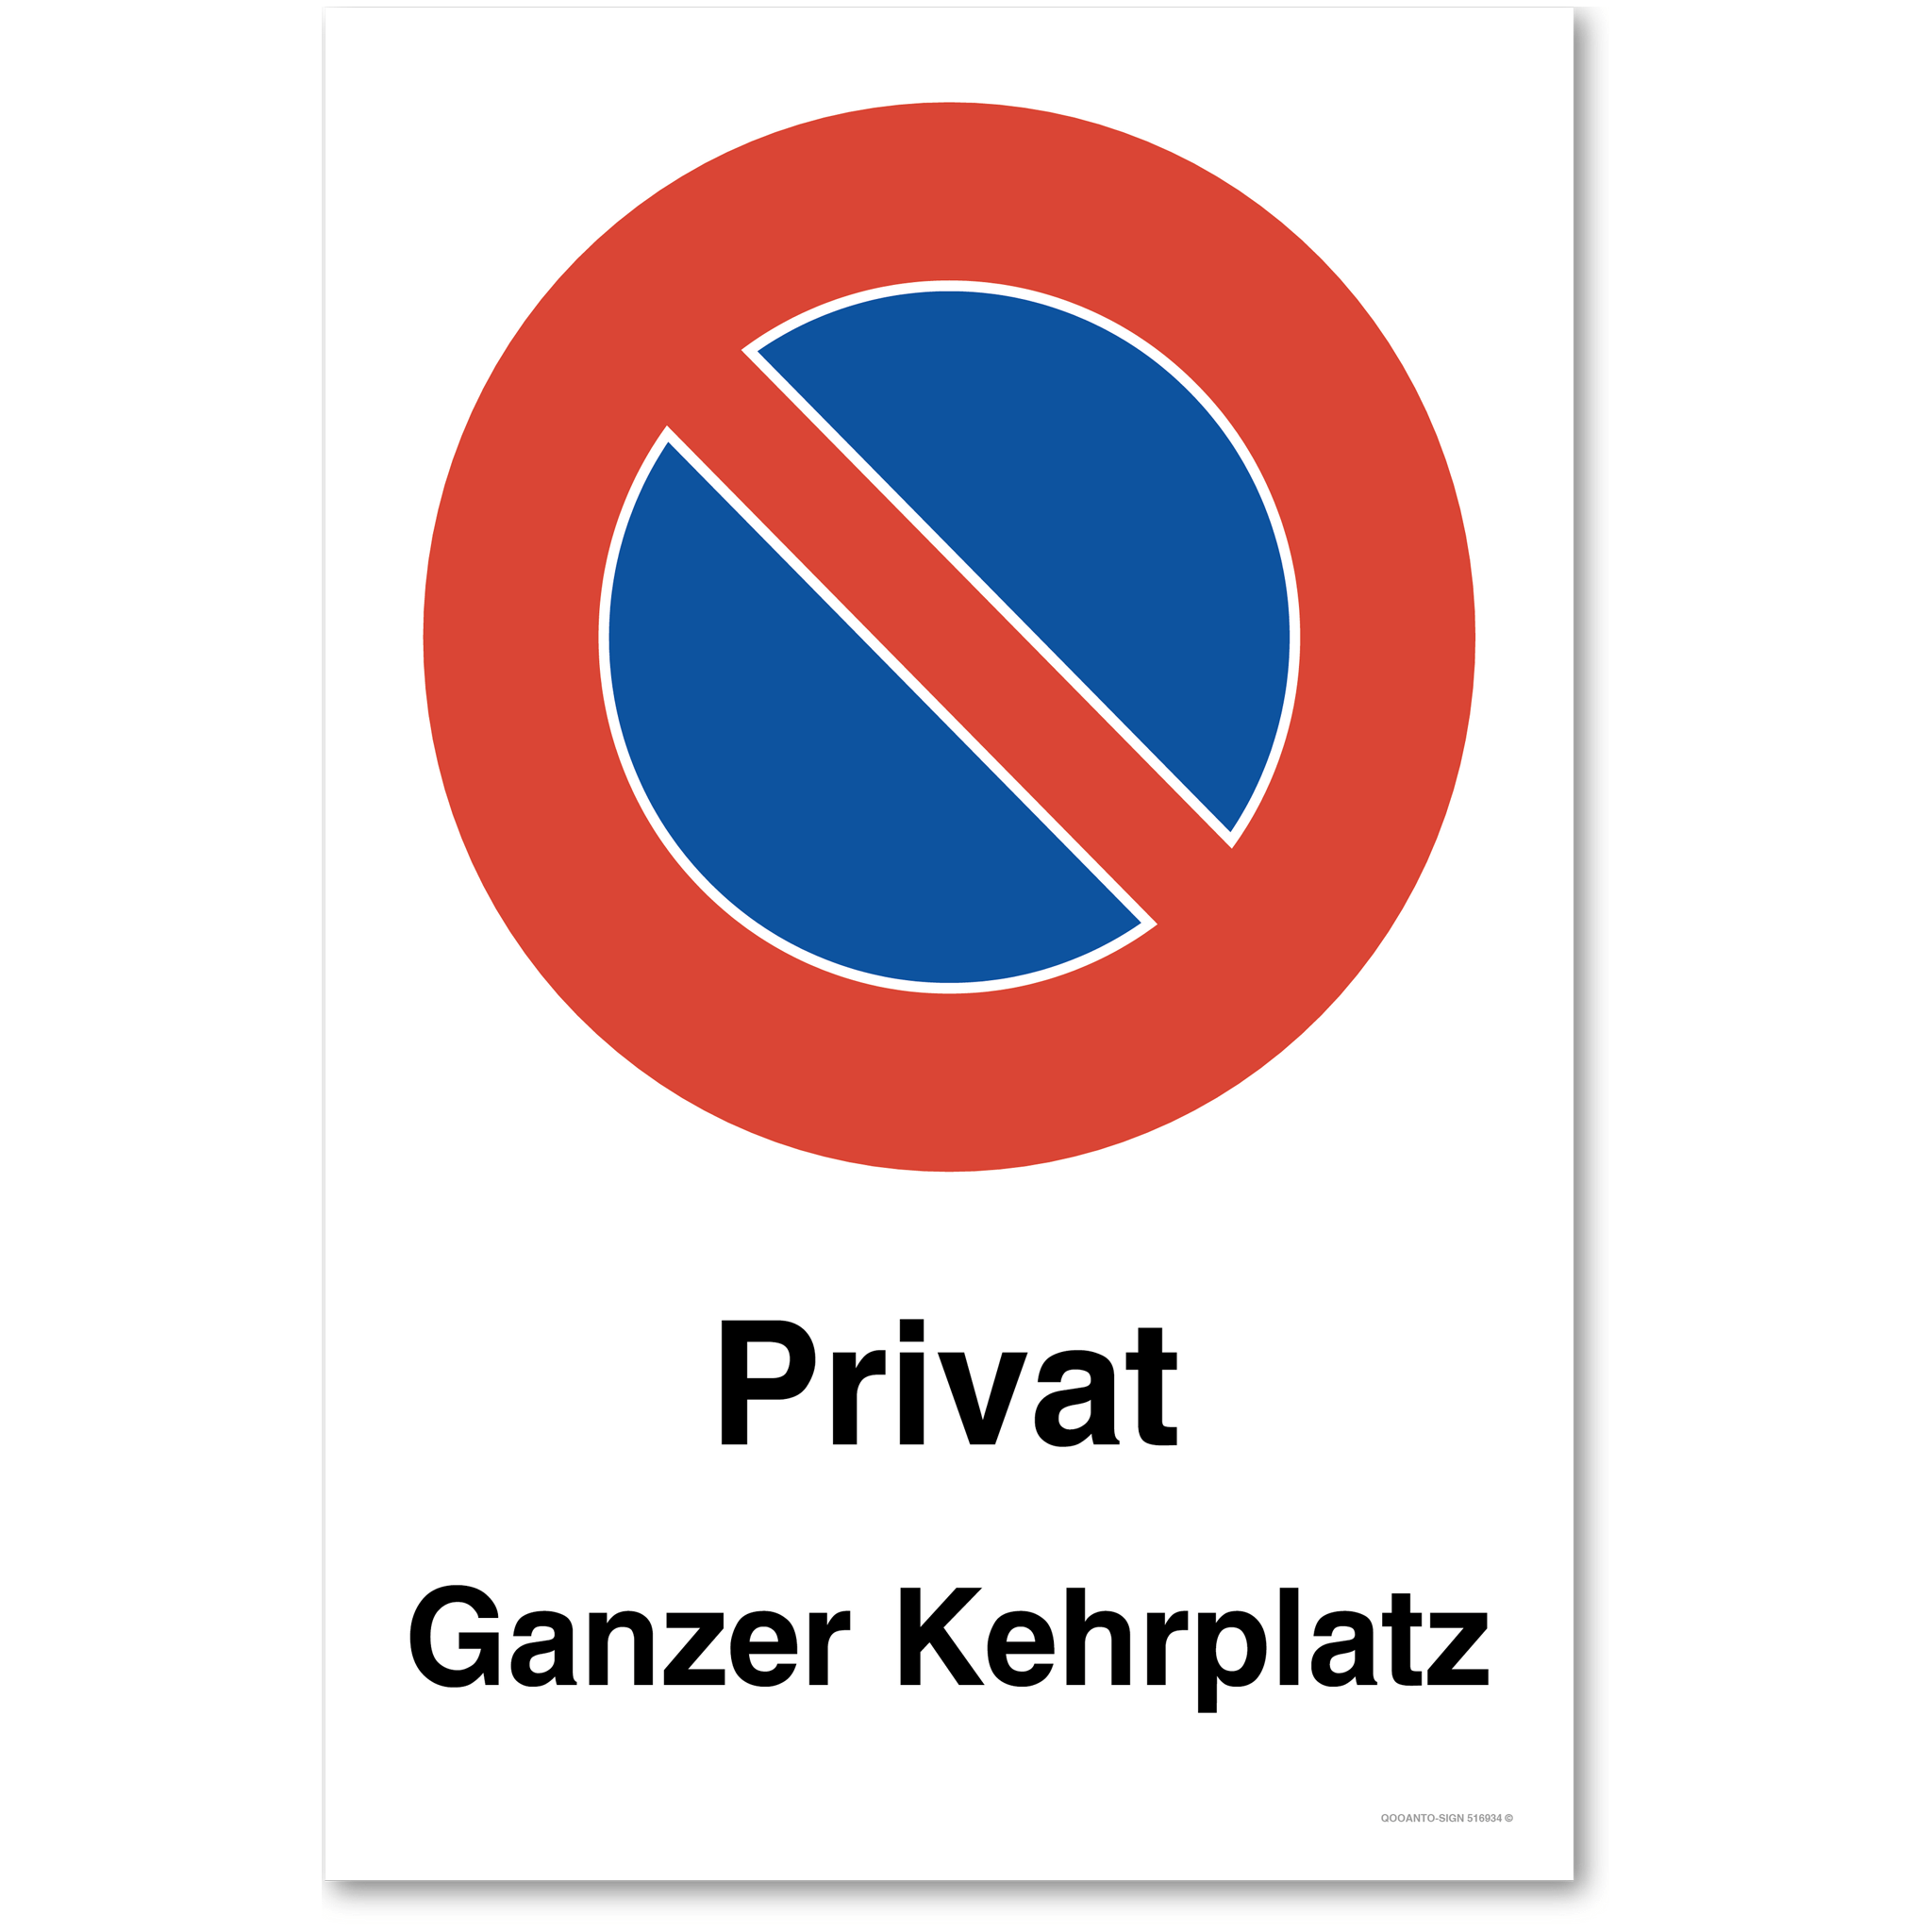 Privat ganzer Kehrplatz - Parkieren verboten - Parkverbotsschilder hochformat